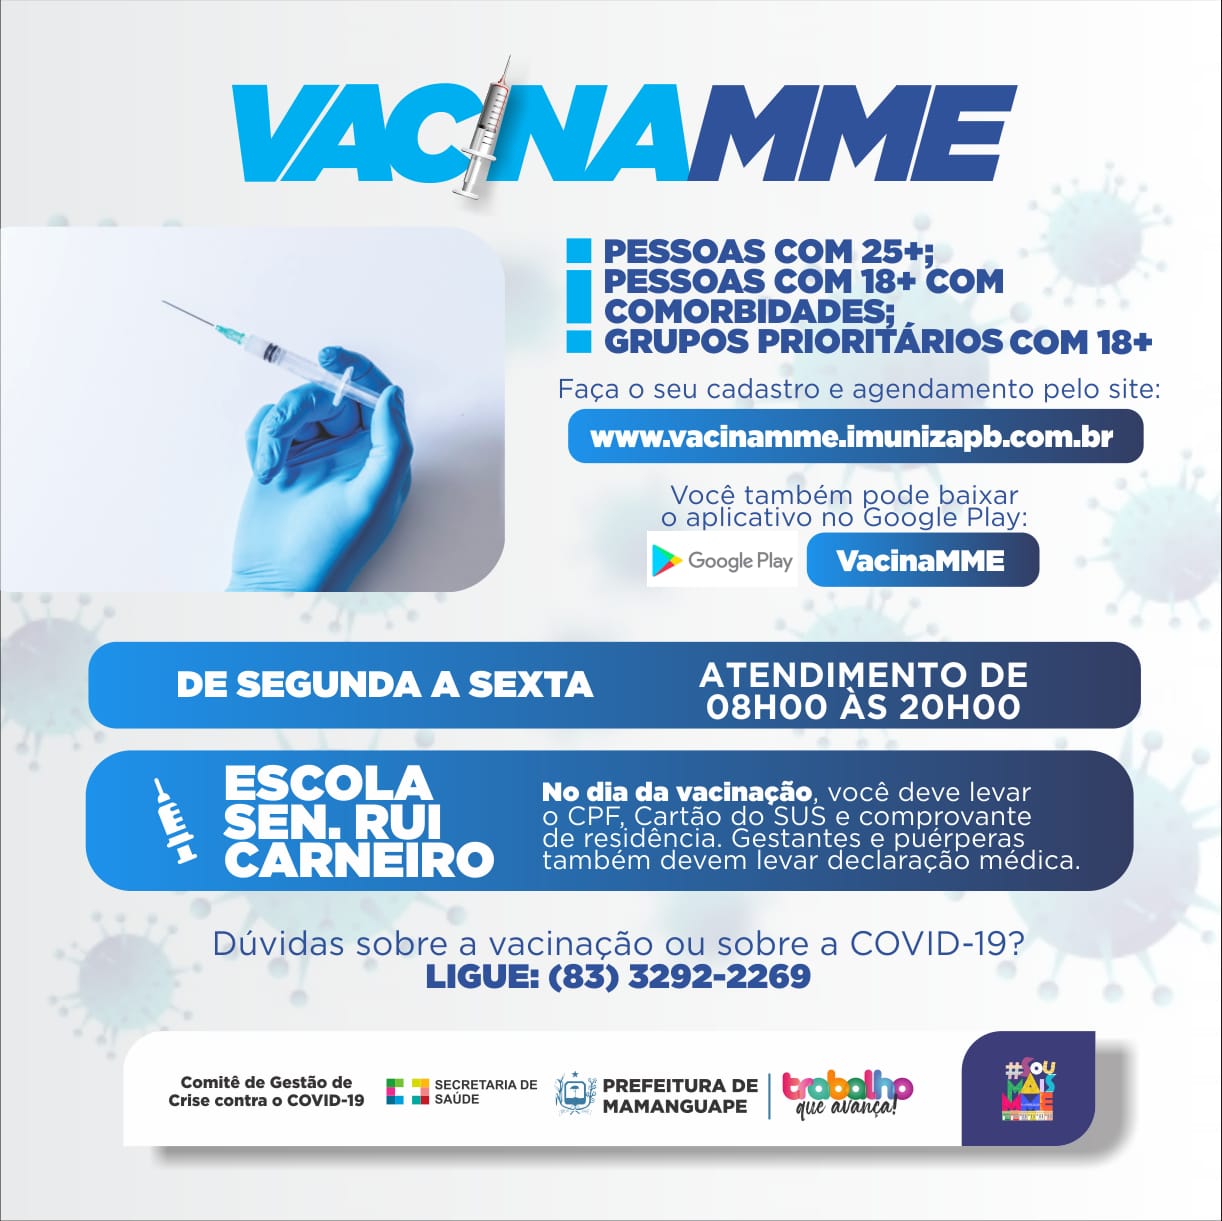 Mamanguape vacina 25+ e reforça uso de site e app para cadastro